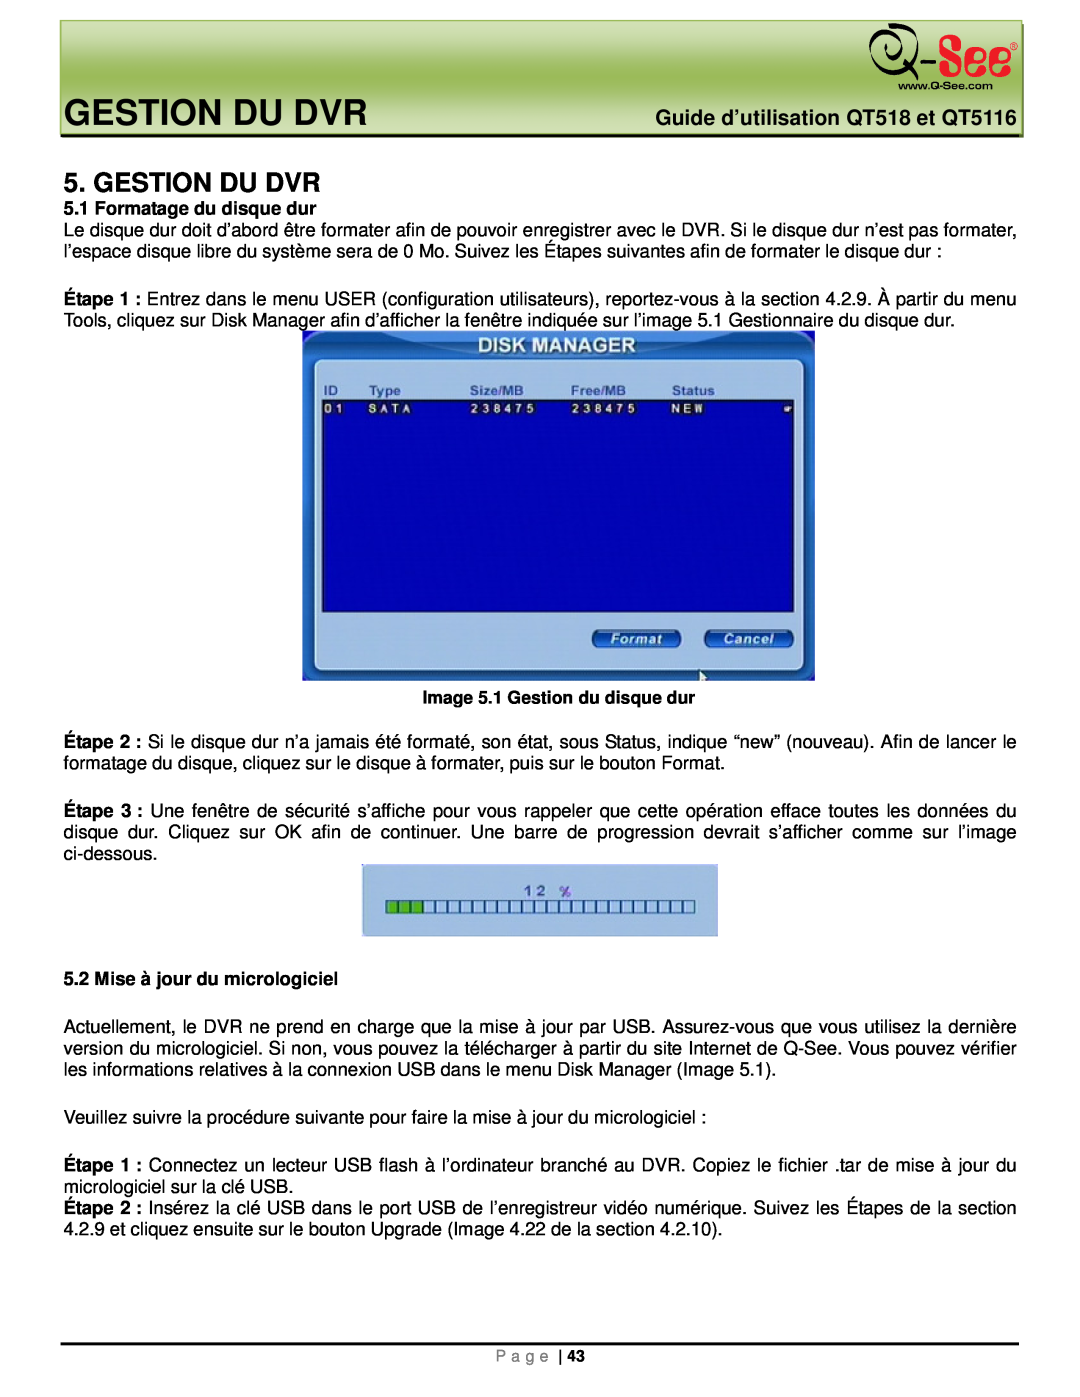 Q-See manual Gestion Du Dvr, Guide d’utilisation QT518 et QT5116 